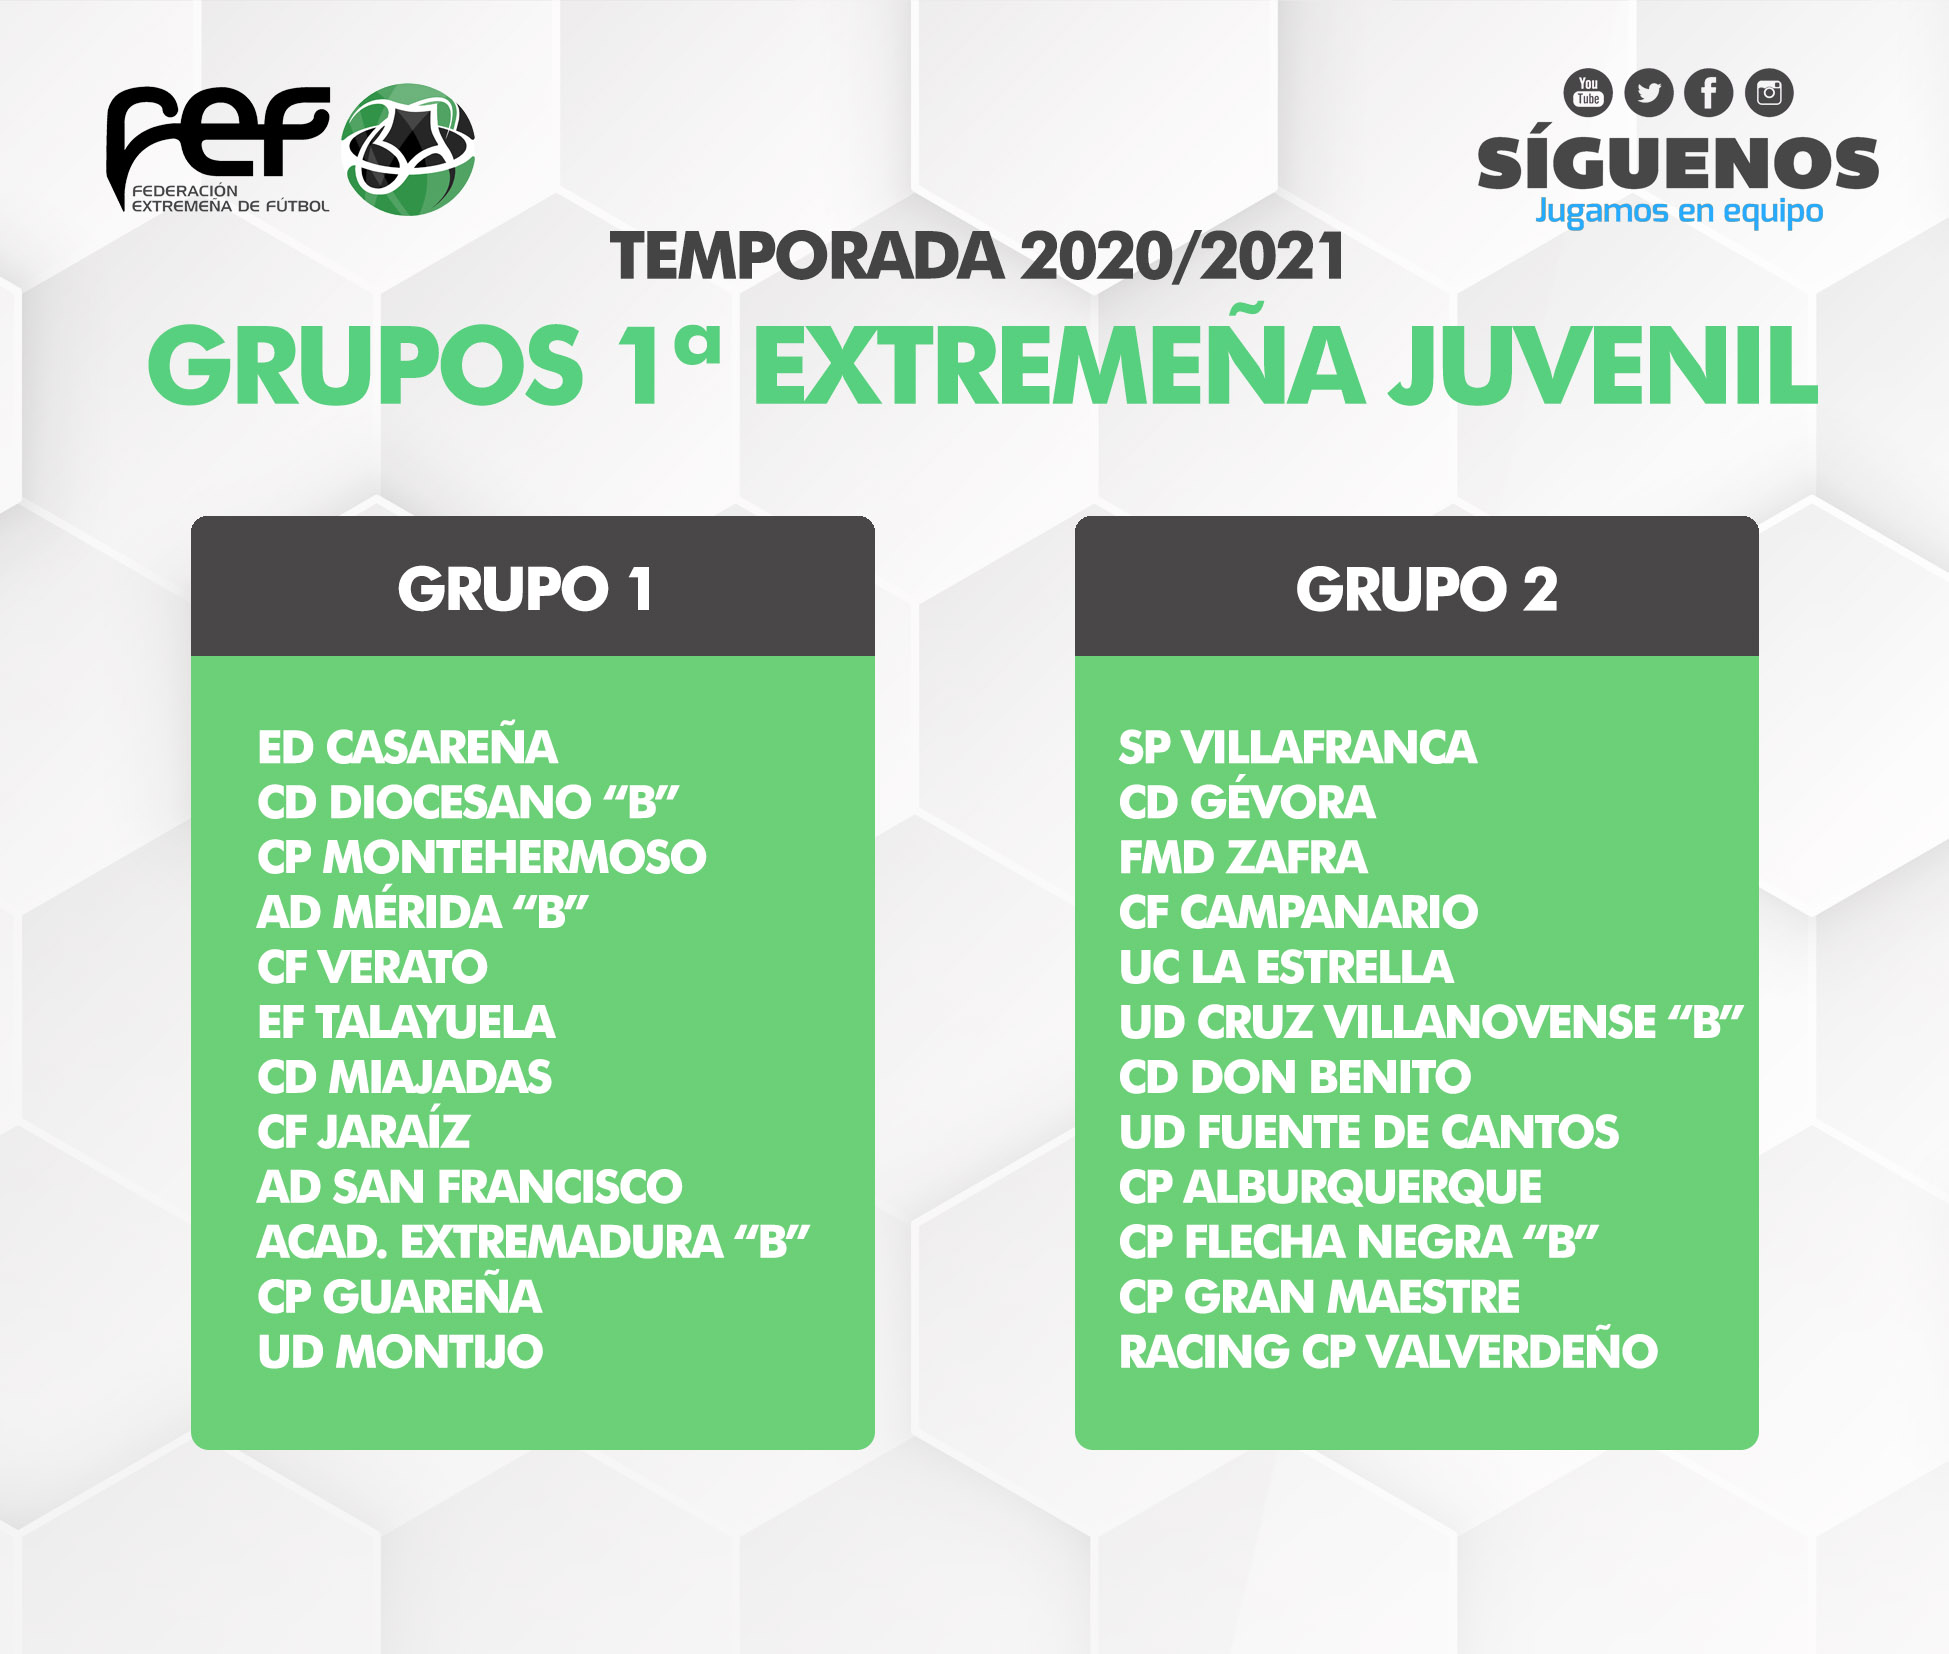 1ª División Extremeña Juvenil 2020/2021